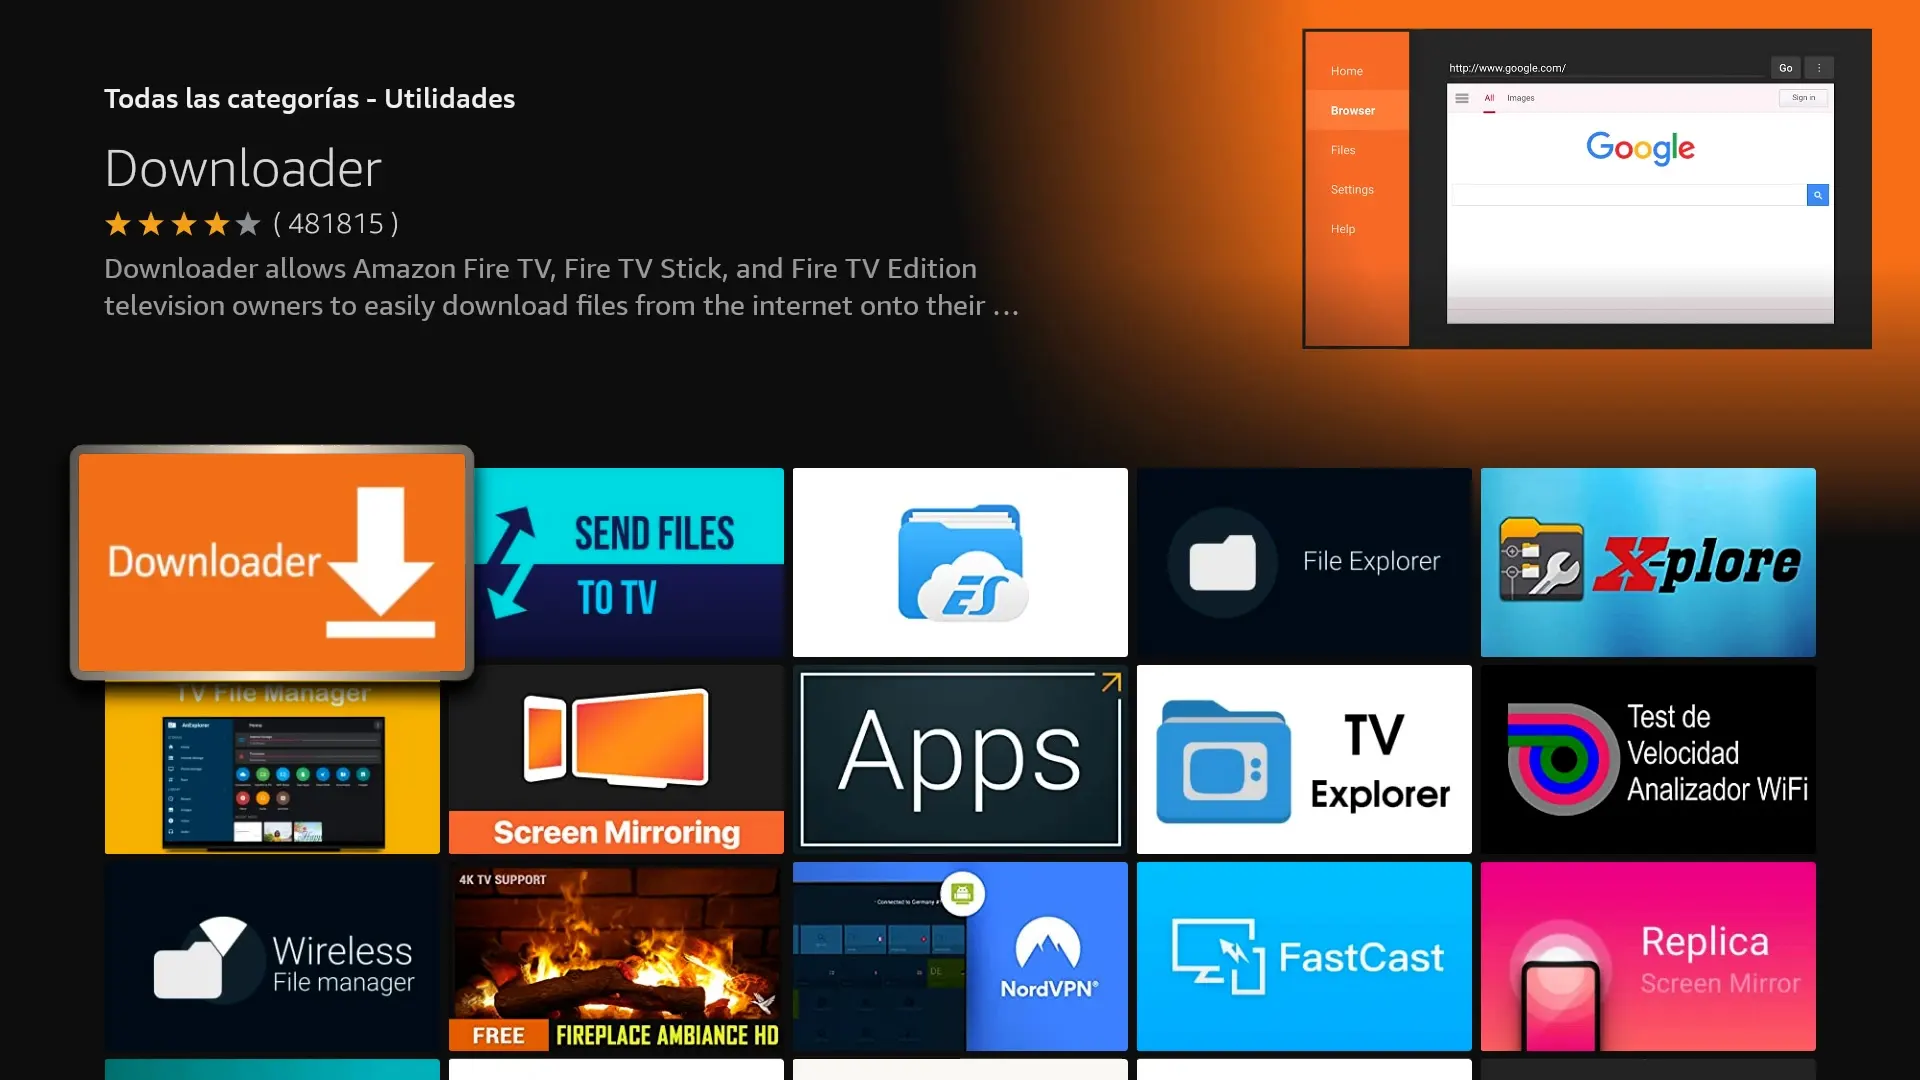 App Downloader - Como instalar Apps externas en el Amazon Fire TV Stick